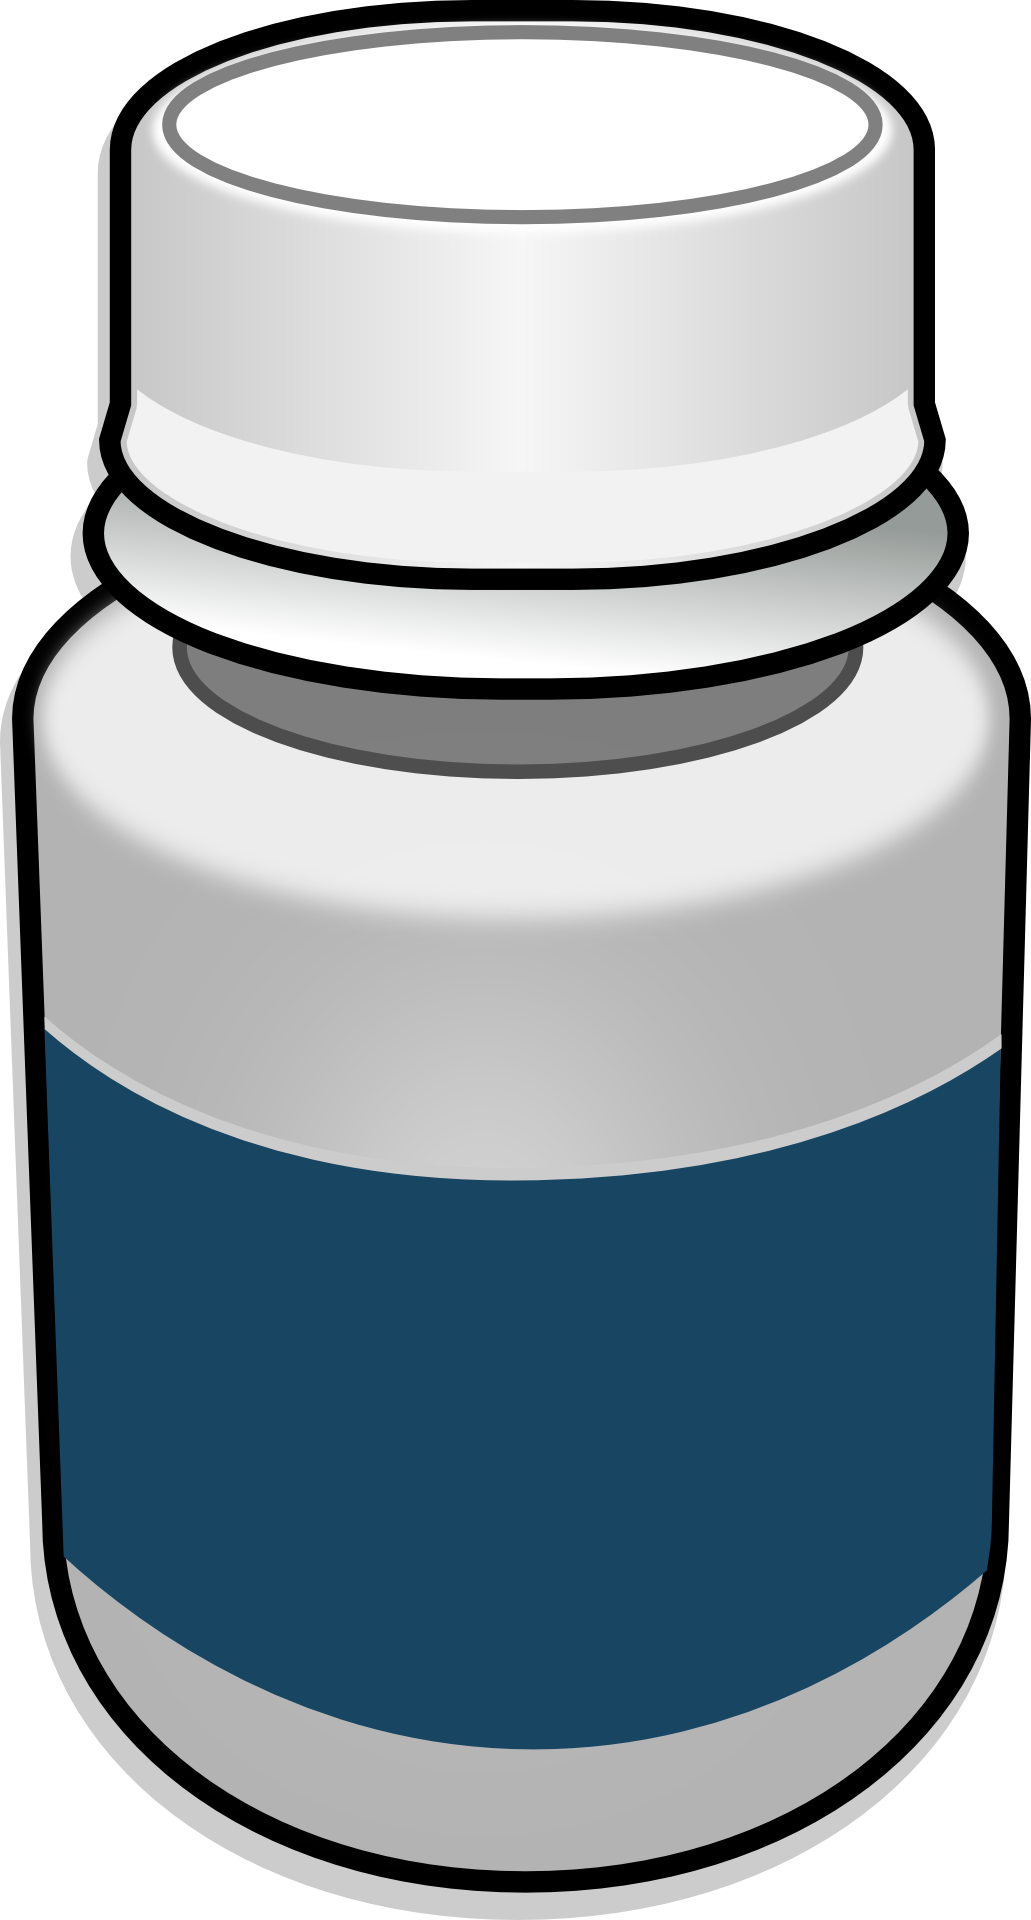 A White Jar With Blue Liquid